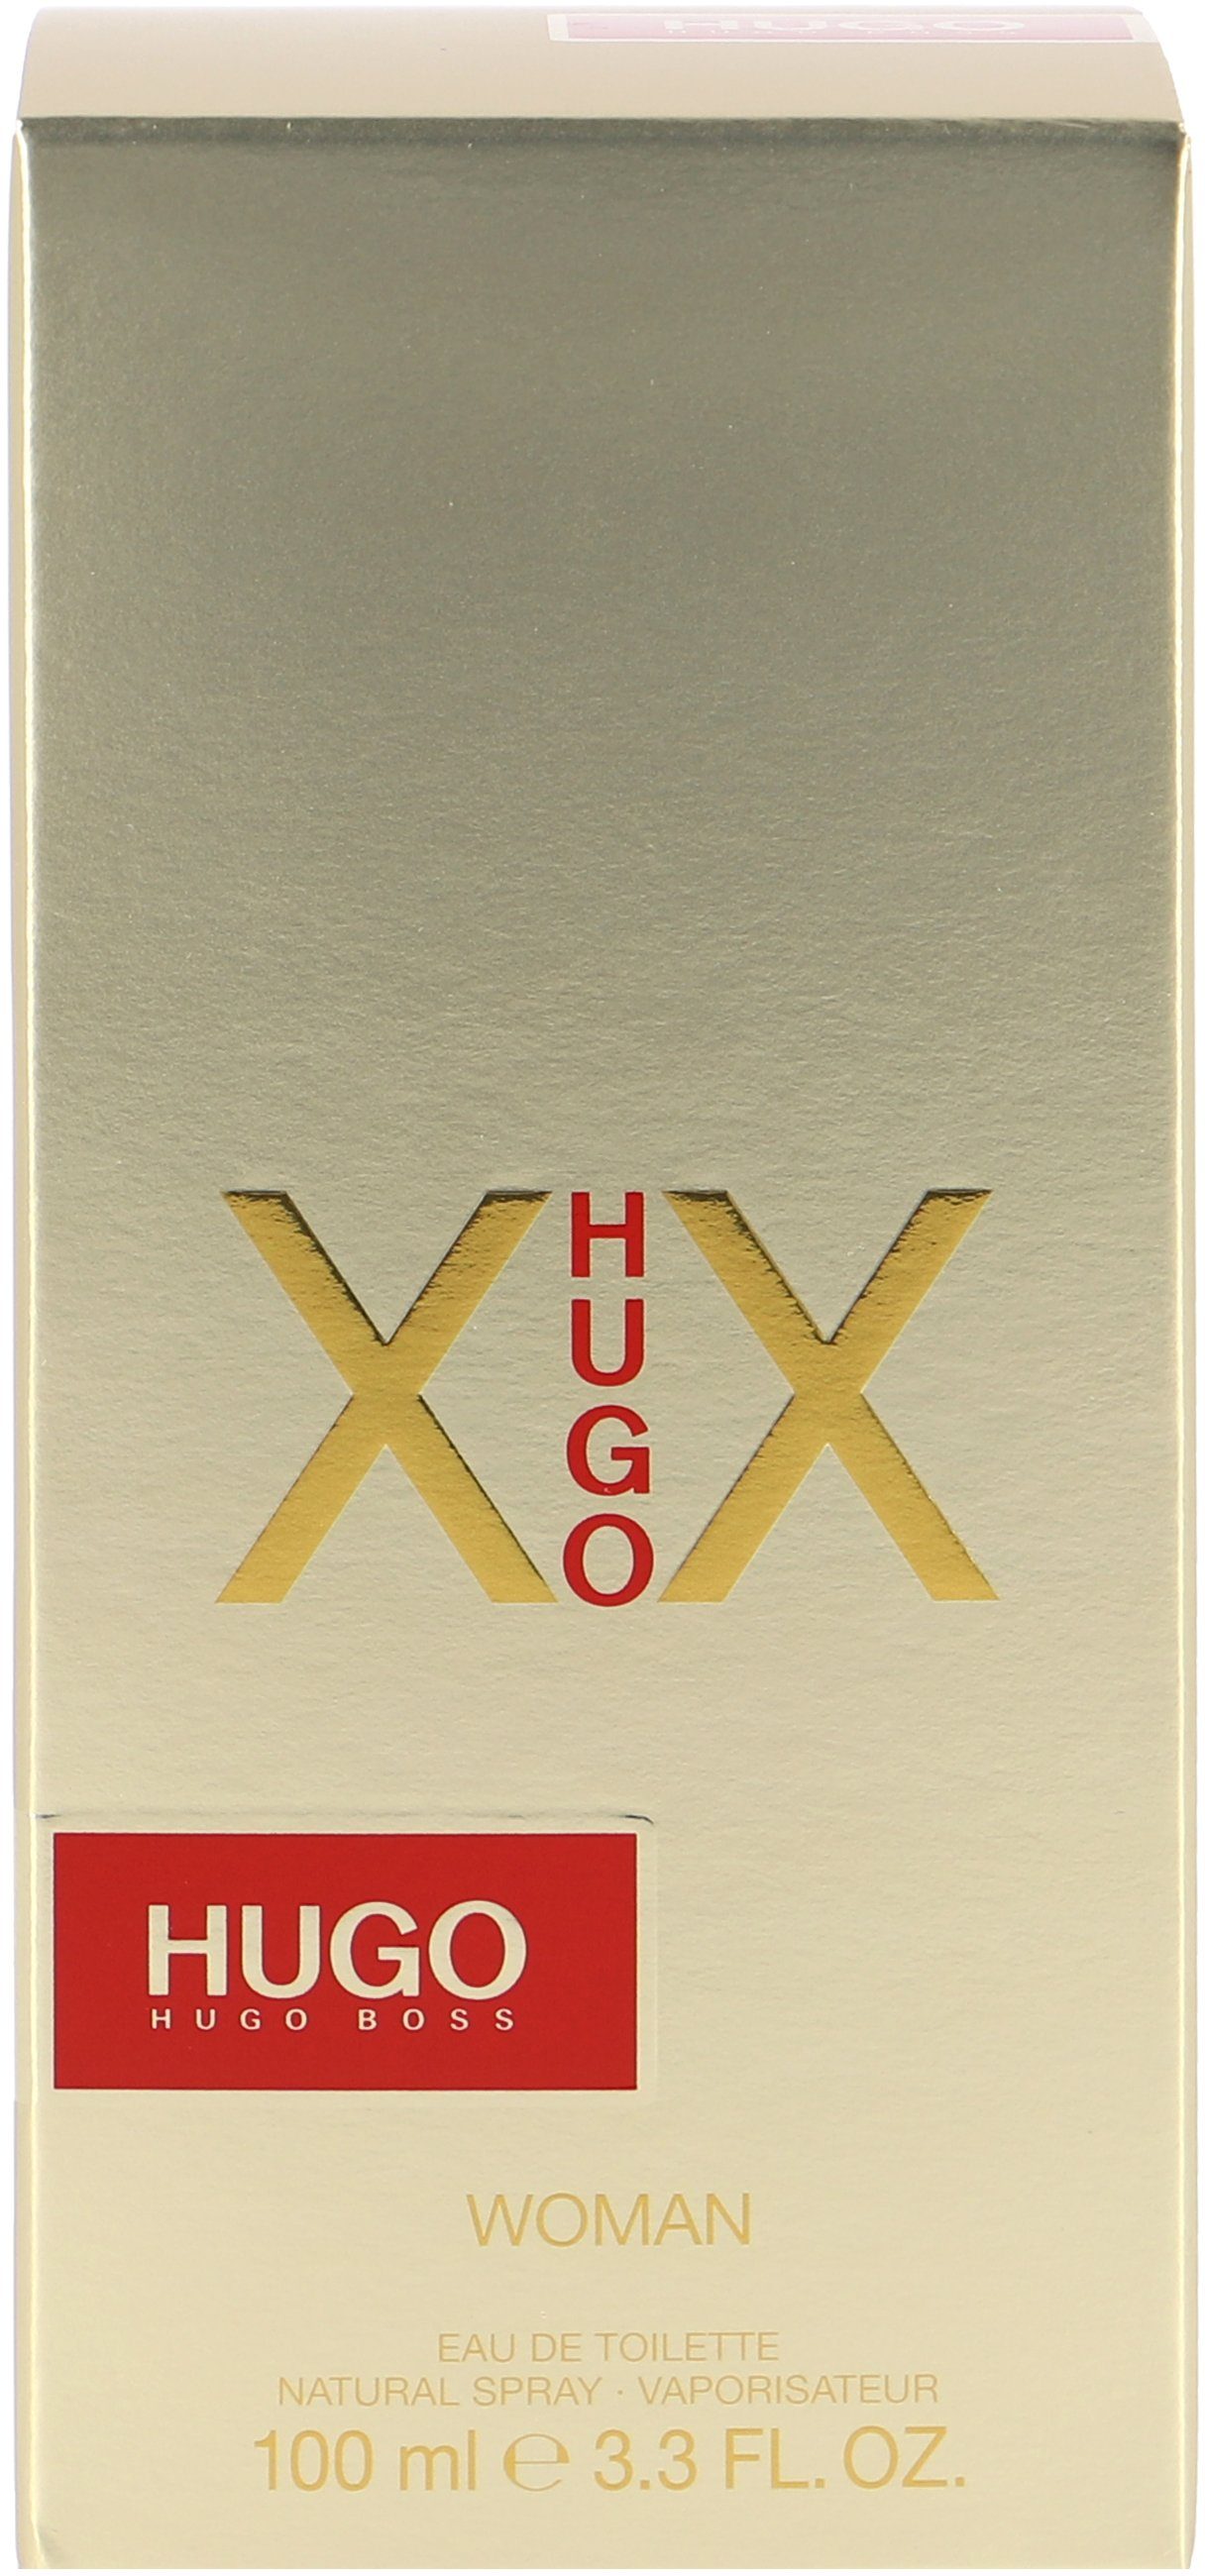 Female HUGO Toilette XX Eau de Hugo